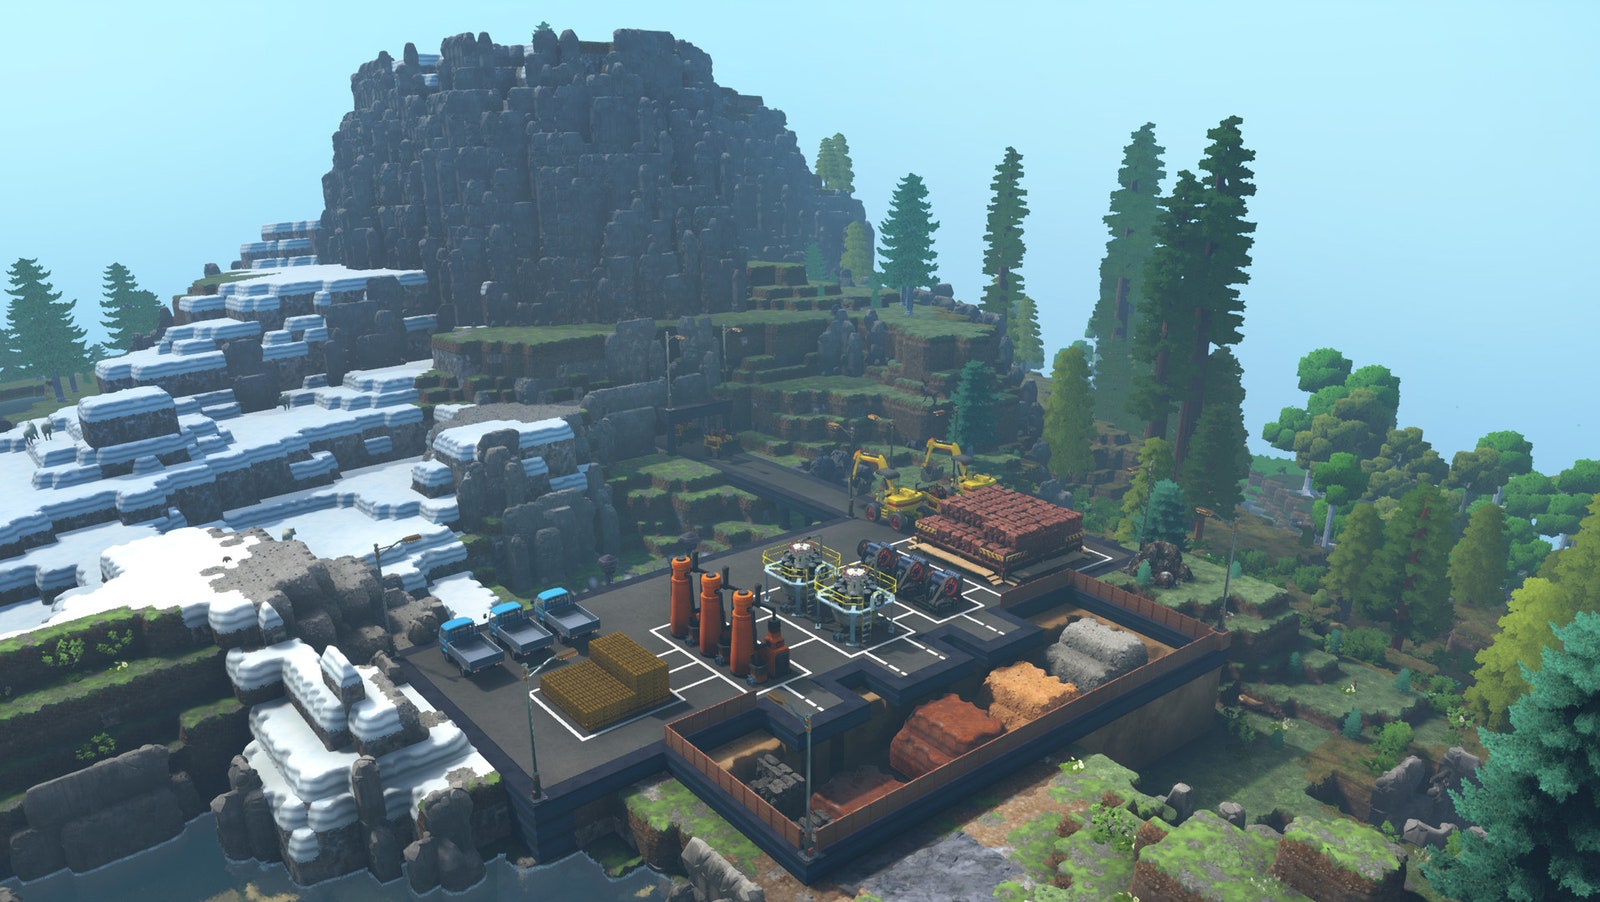 Captura de pantalla del juego Eco, con una gran fábrica en un entorno montañoso